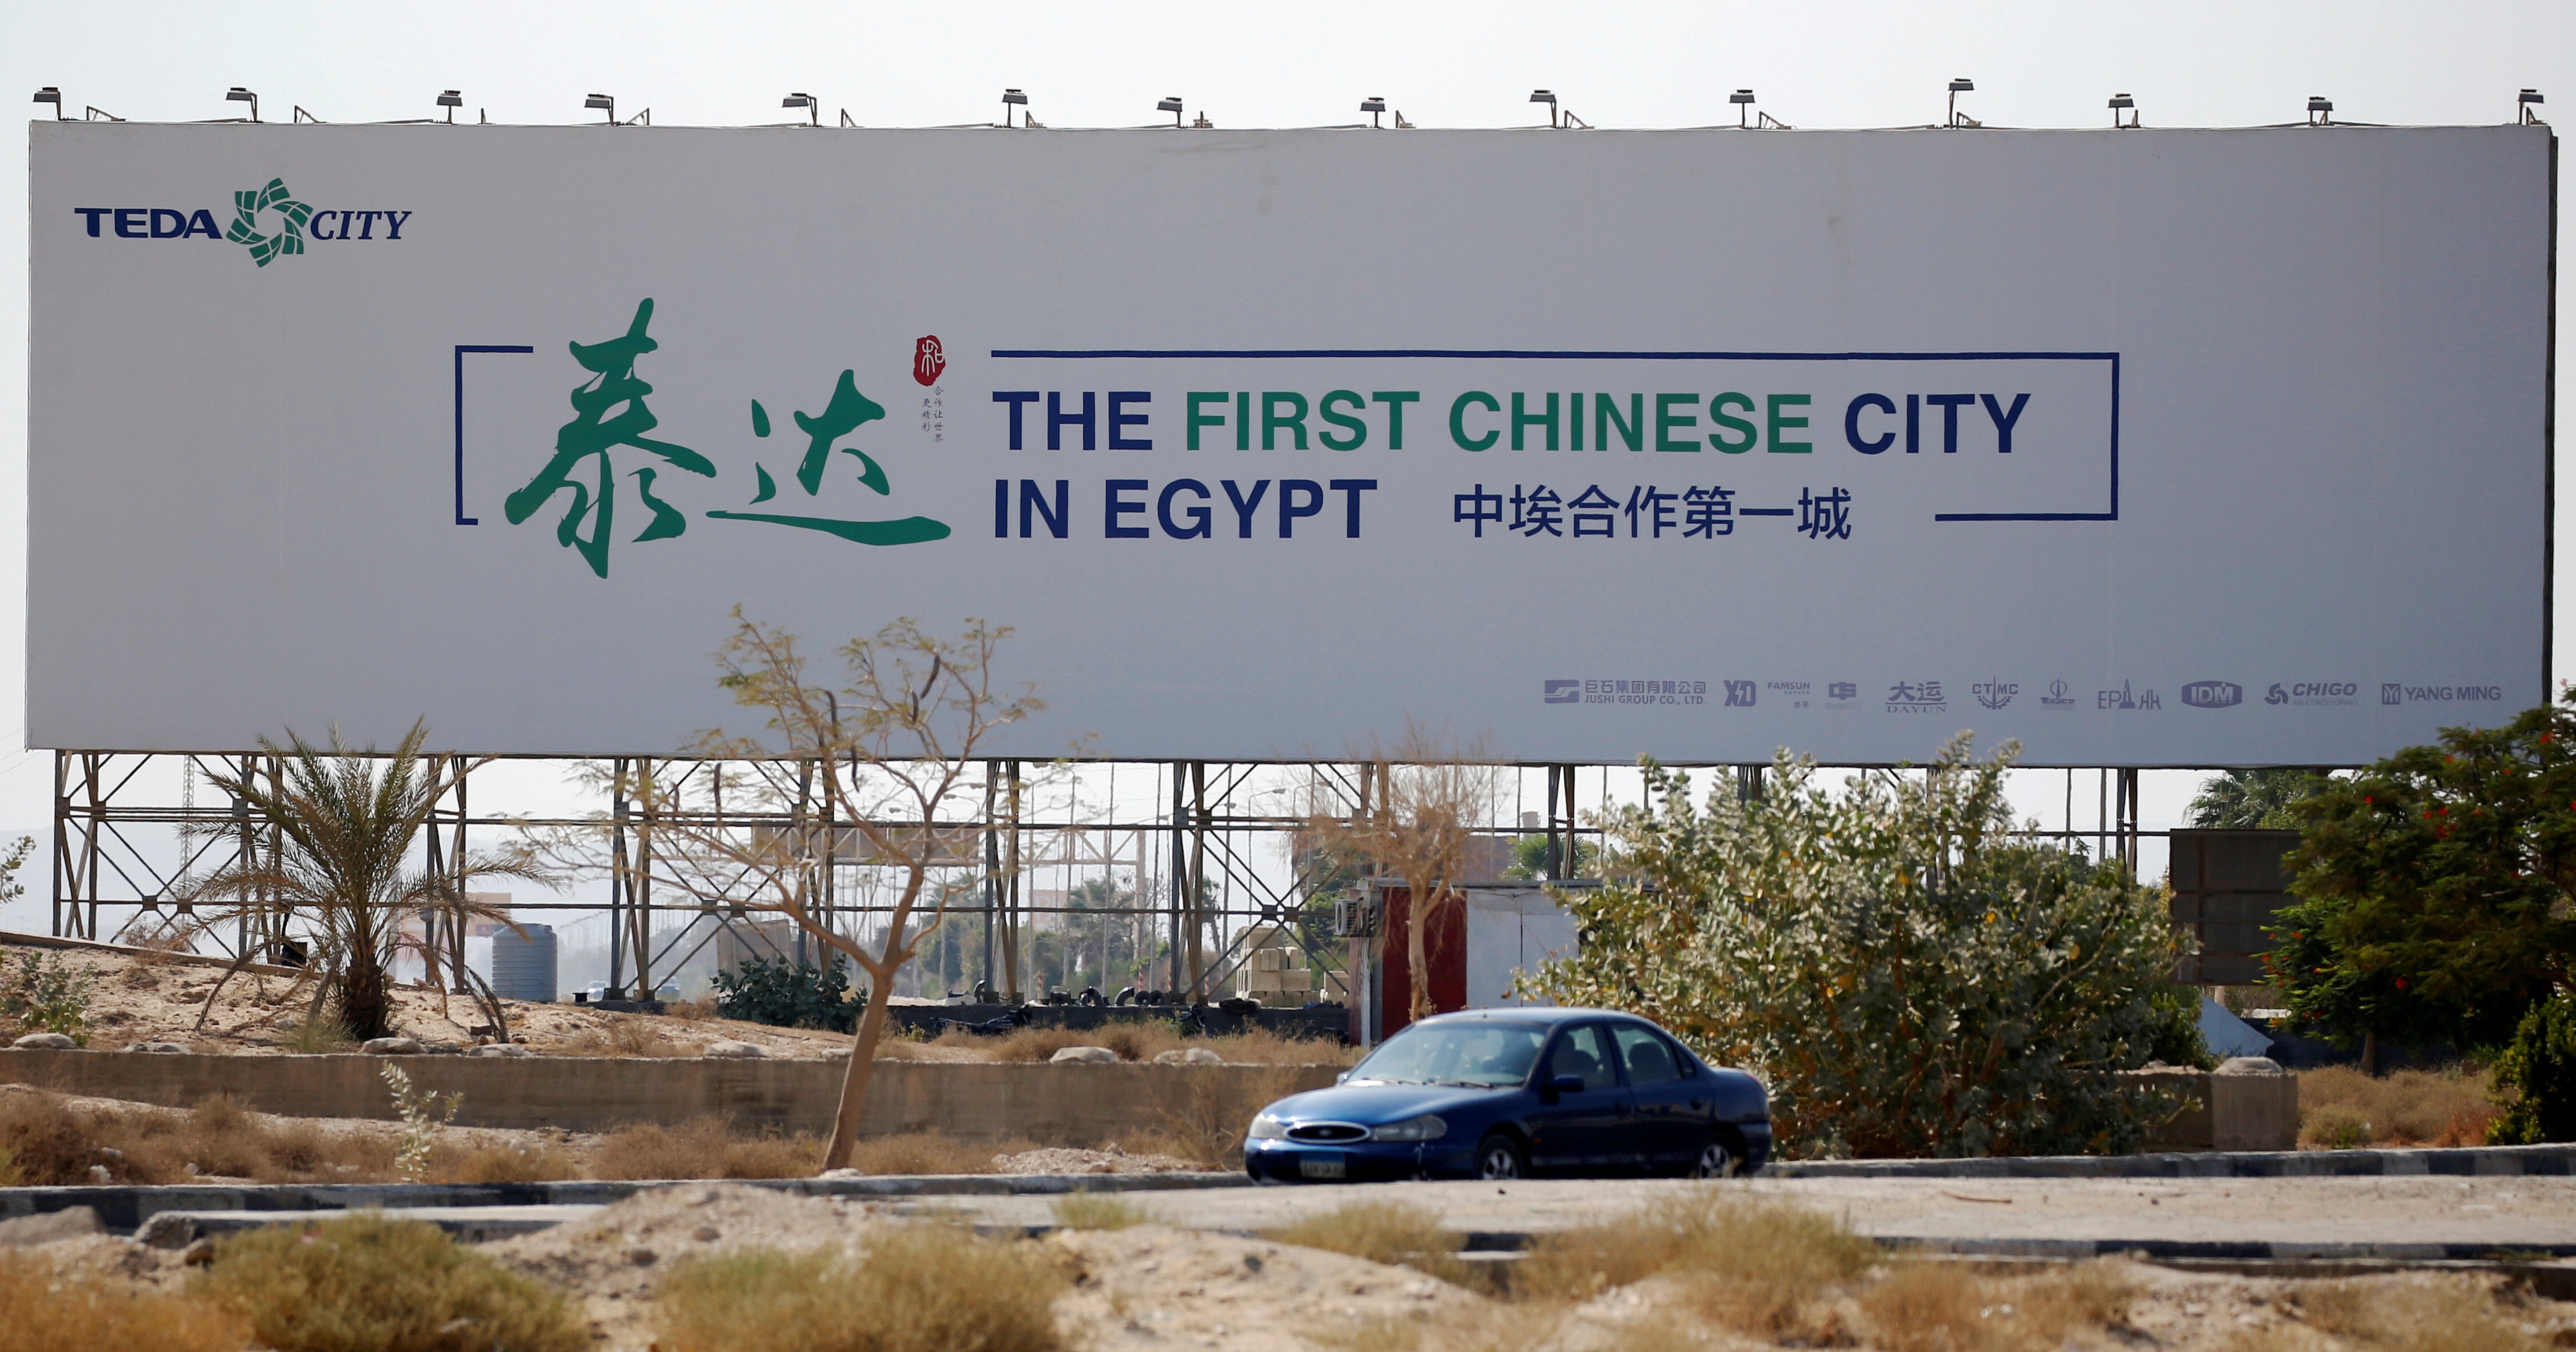 مدينة تيدا: أول مدينة صناعية صينية في مصر والتي تقع في صحراء السويس شمال القاهرة  (رويترز)